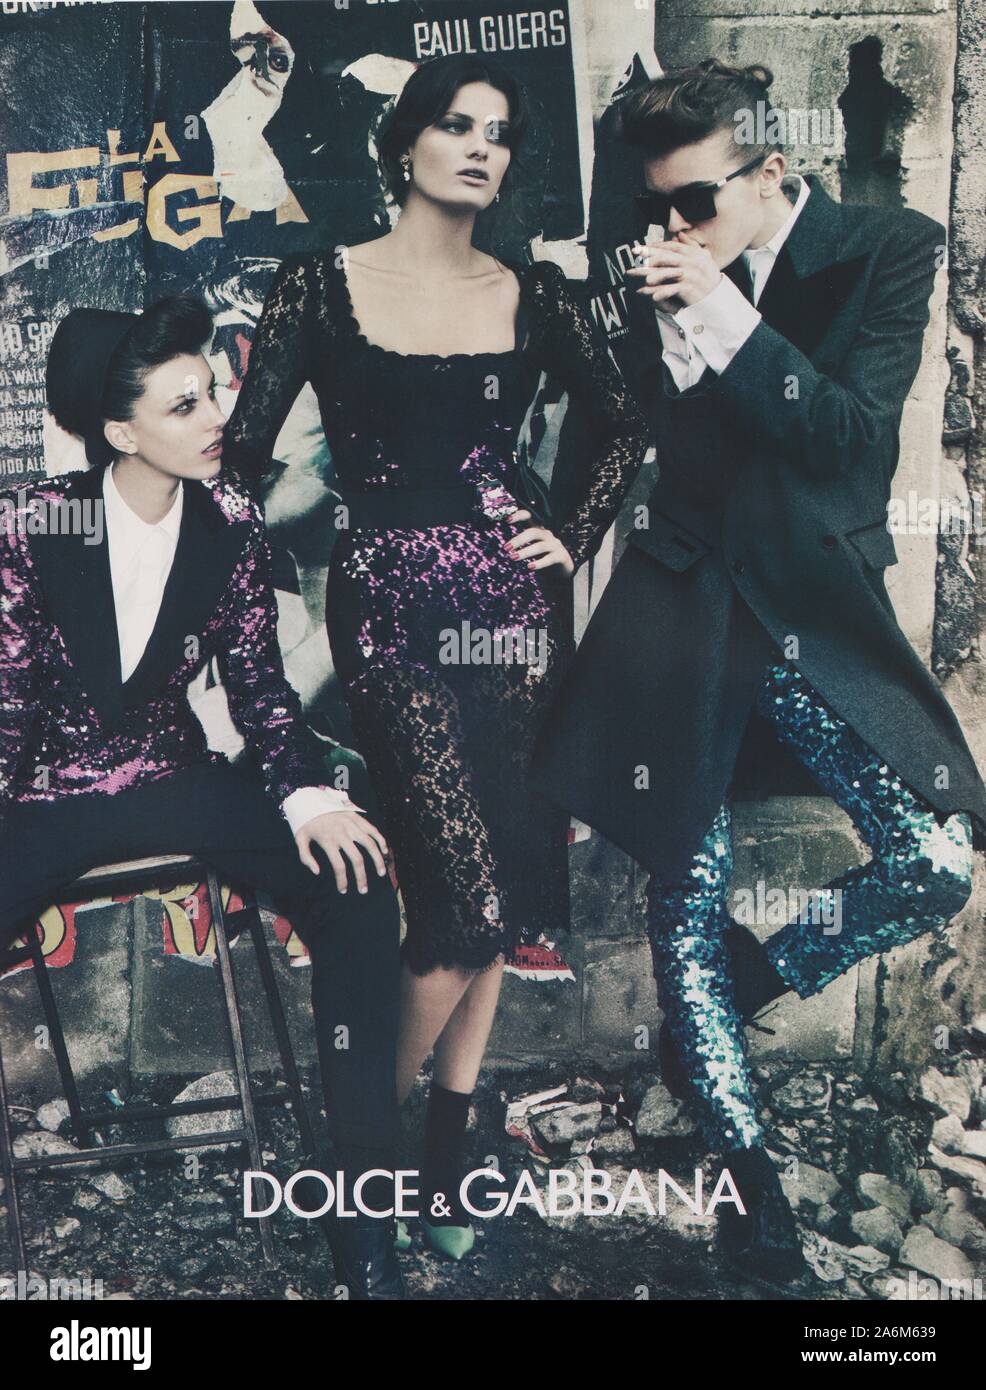 Cartel de publicidad de Dolce & Gabbana fashion house en revista en papel  desde el año 2011, la publicidad, el creativo del anuncio de Dolce & Gabbana  desde 2010s Fotografía de stock -